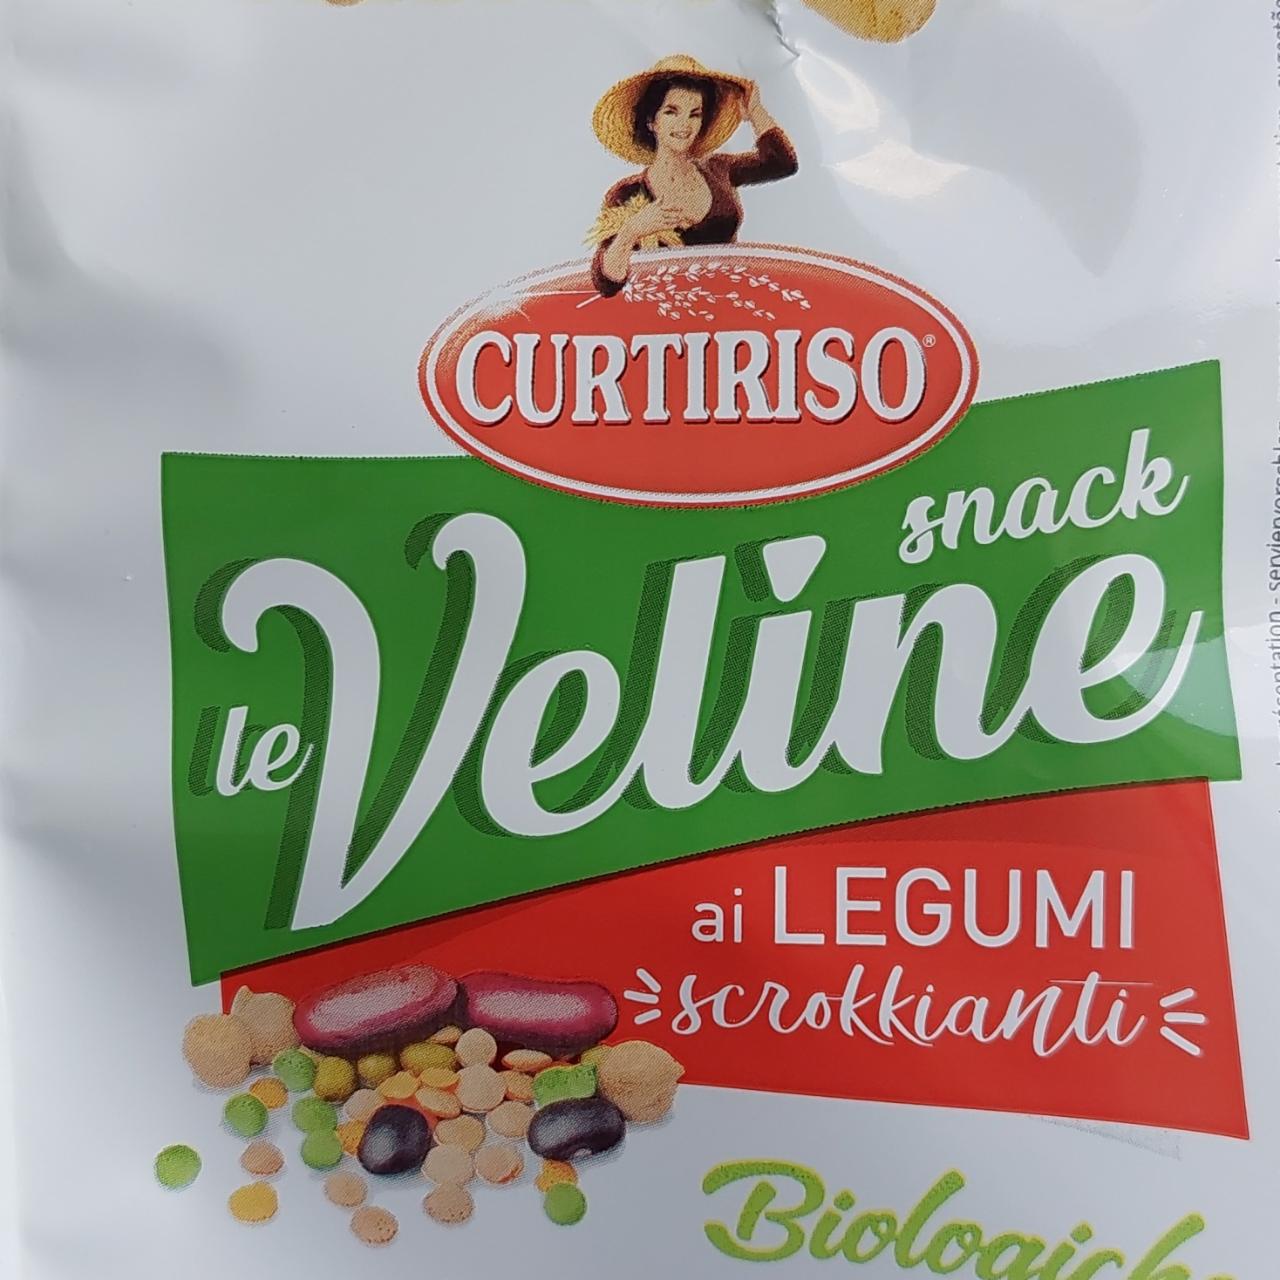 Fotografie - Le Veline snack ai Legumi scrokkianti Curtiriso